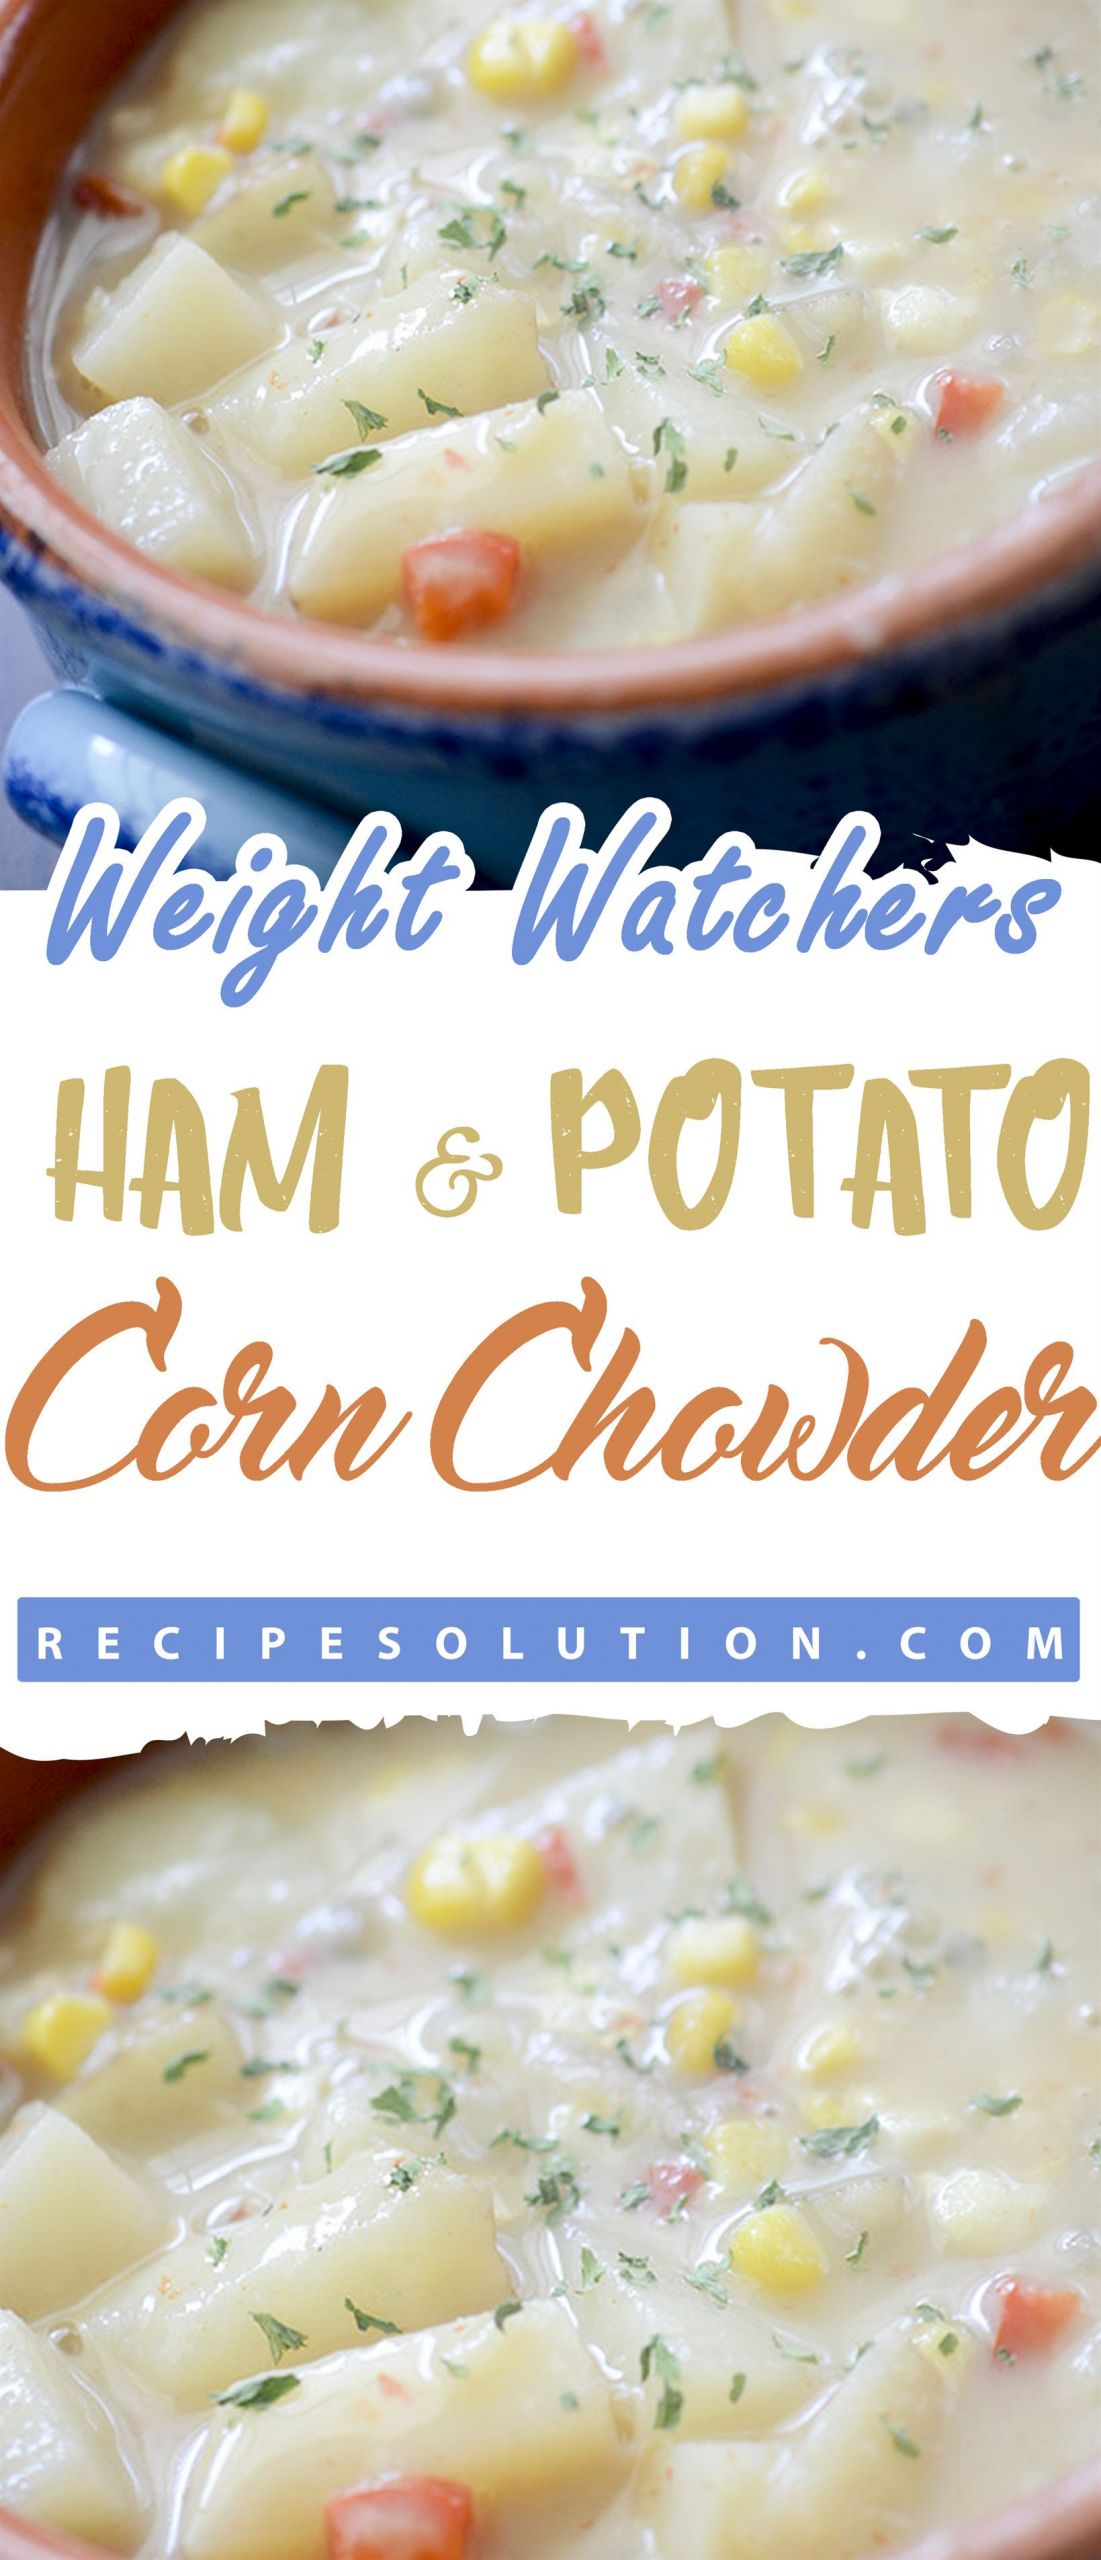 Weight Watcher Corn Chowder
 Weight Watchers Ham & Potato Corn Chowder